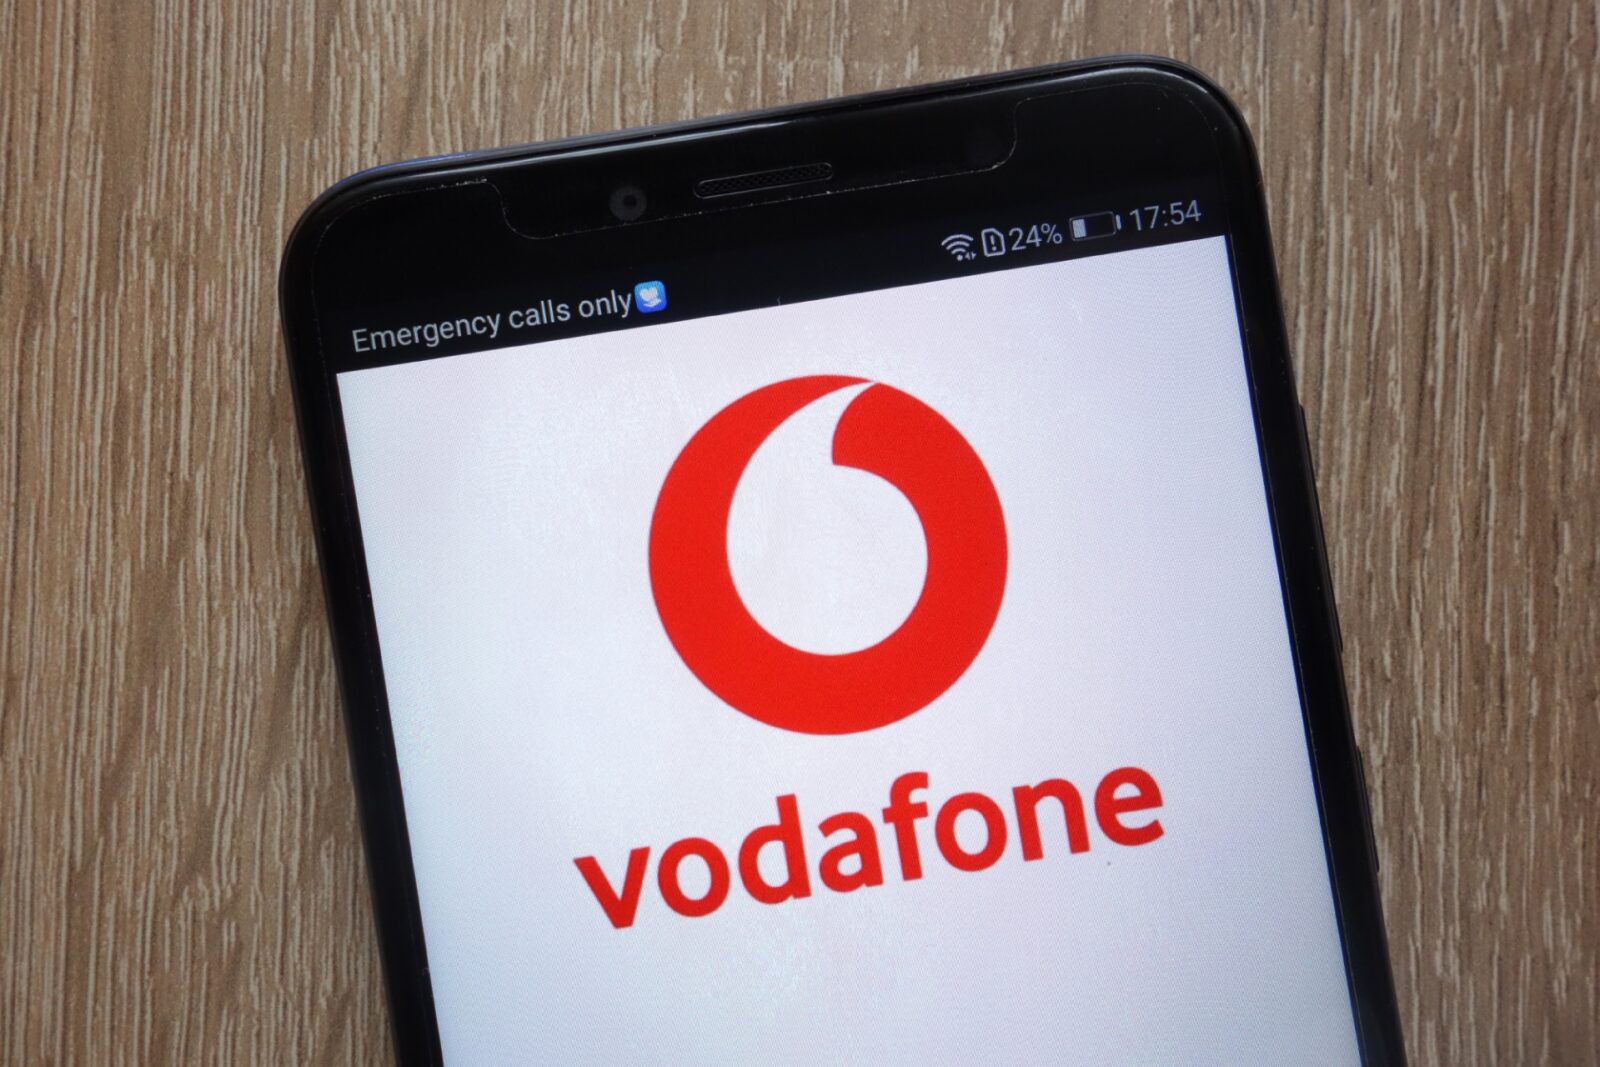 Ciberataque à Vodafone obriga bombeiros a recorrer a número alternativo